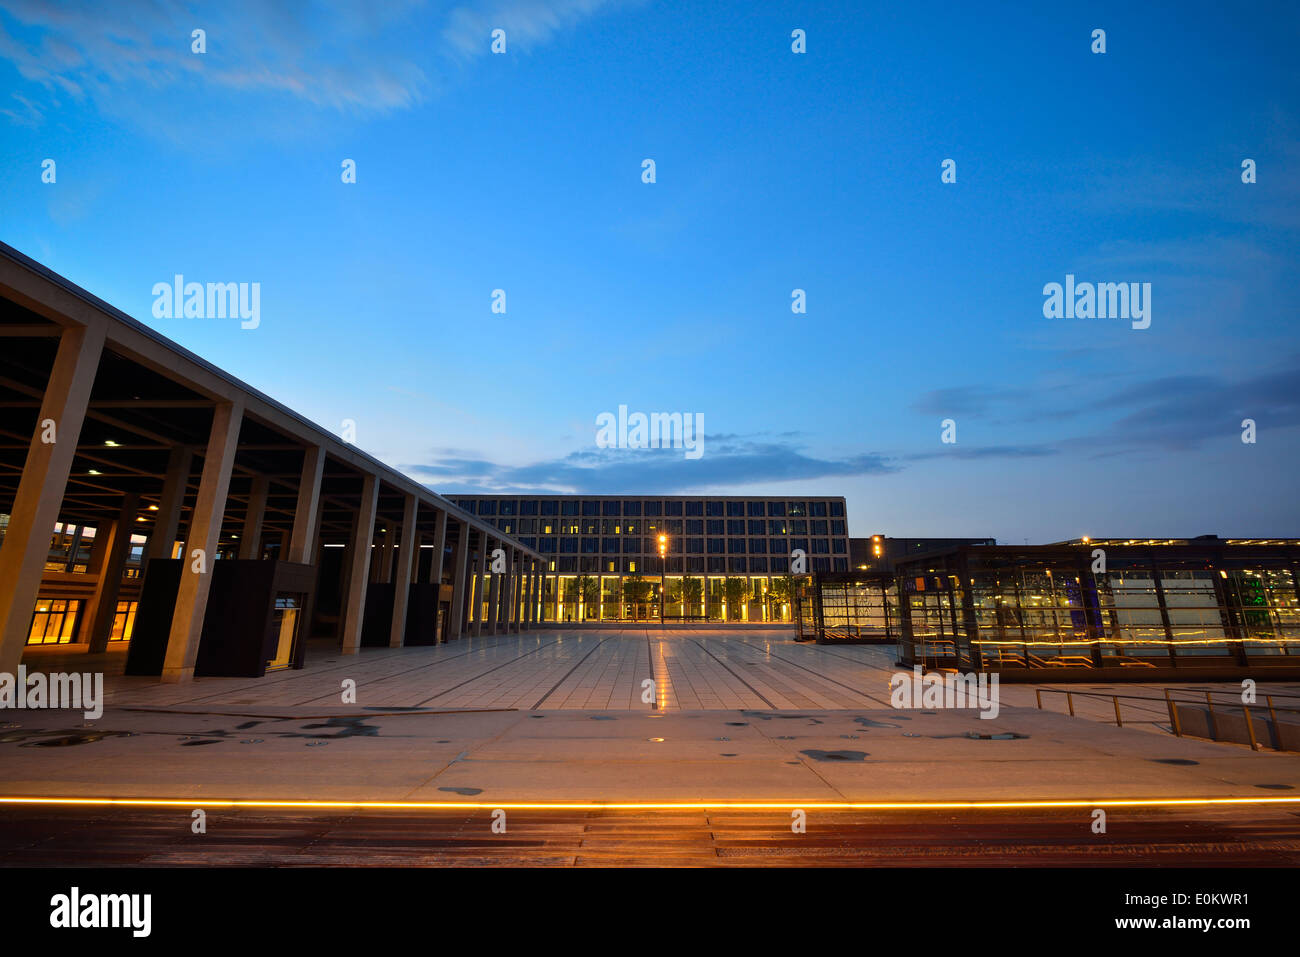 La Willy-Brandt-Platz est une place en face de Berlin Brandenburg Airport (IATA : BER), le nouvel aéroport international de Berlin, capitale de l'Allemagne. - 21 Avril 2014 Banque D'Images